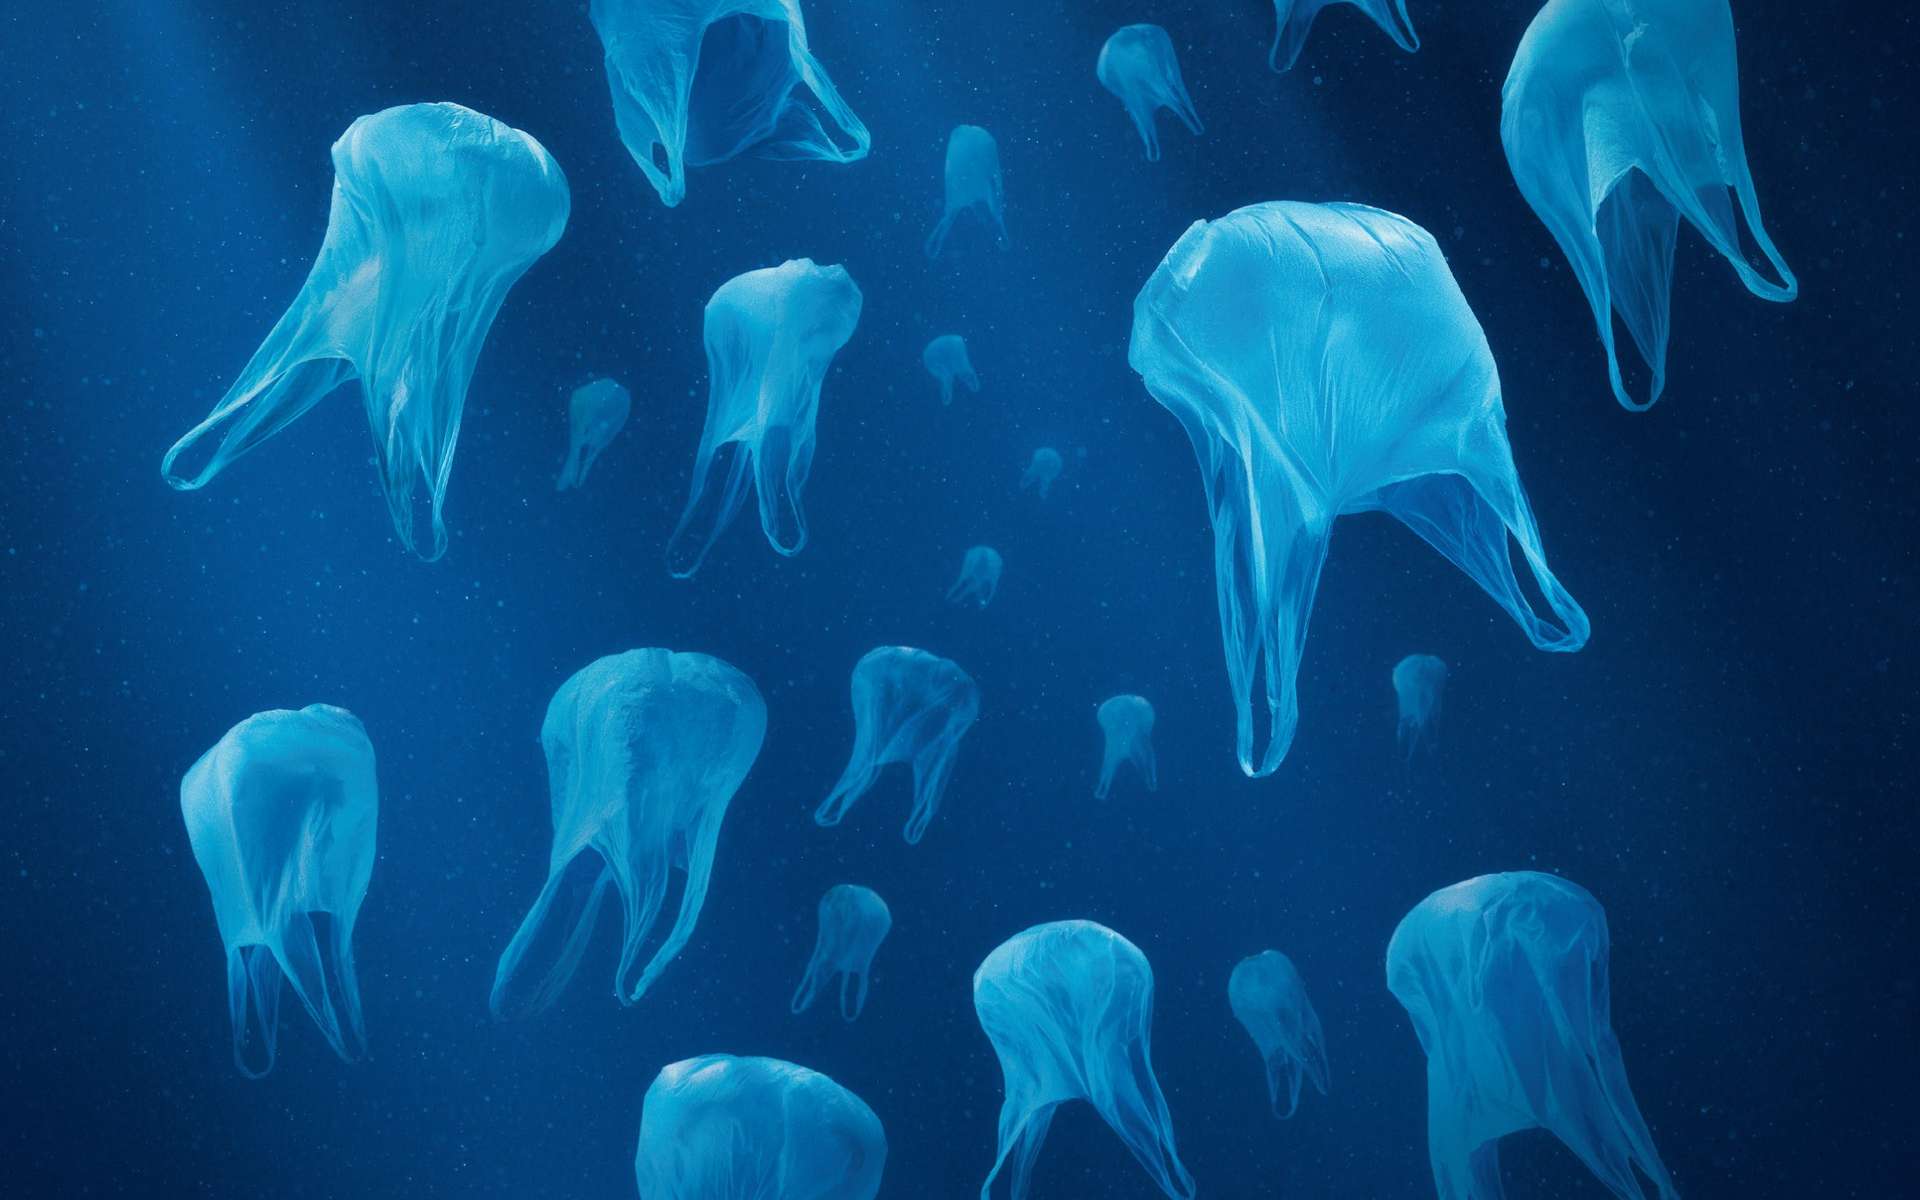 Les macrodéchets (sacs, bouteilles, boîtes, etc.) ne constitueraient que 20 % des objets en plastique qui flottent dans les océans. Par exemple, des animaux confondent les sachets dans l'eau avec des méduses et peuvent mourir asphyxiés. Les dégâts qu'ils peuvent causer sont donc directement visibles, à l'inverse de la pollution par les microplastiques. © Surfrider Foundation